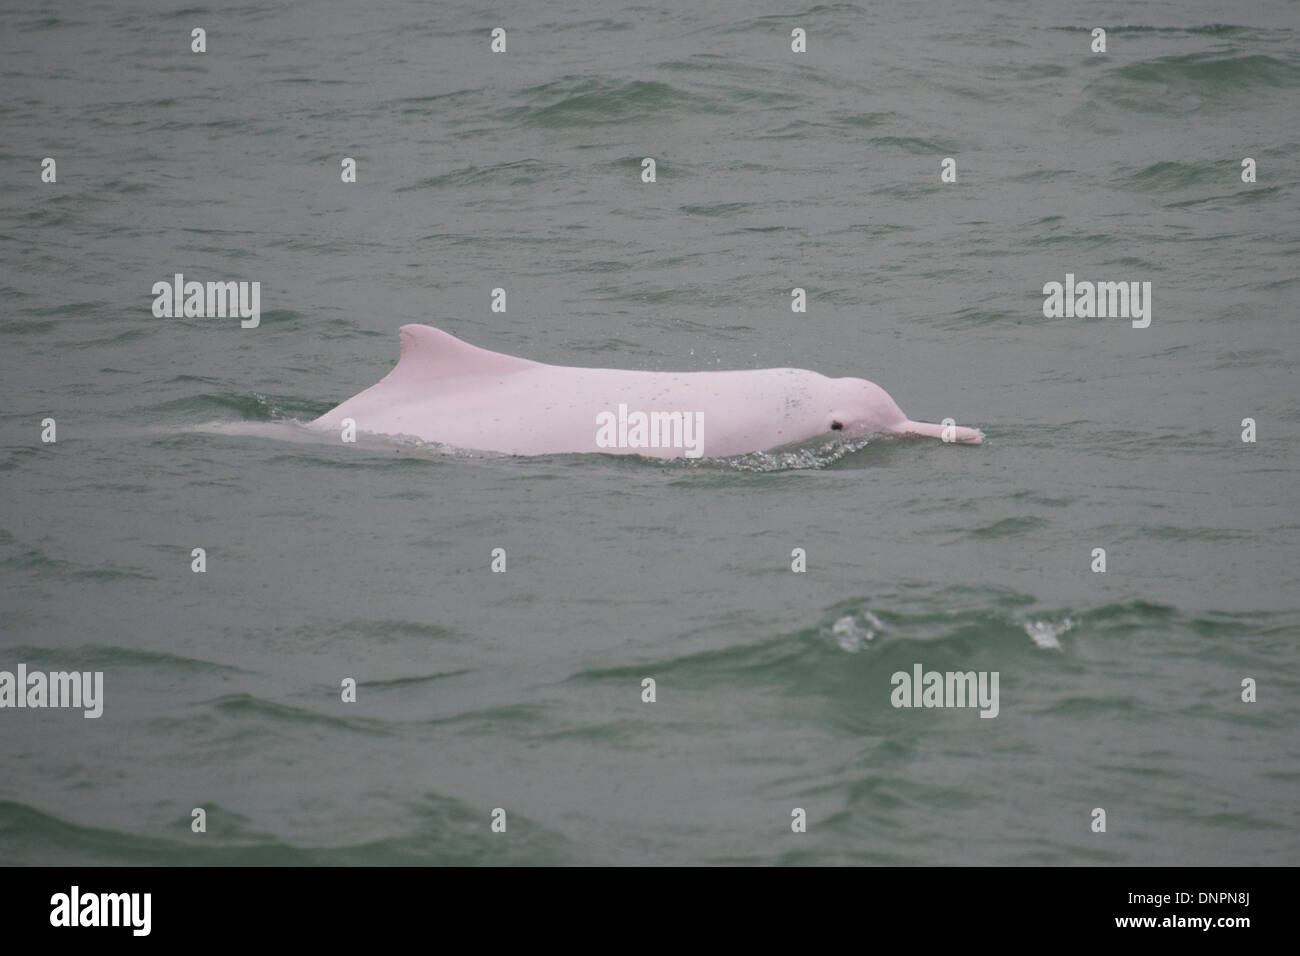 Indo-Pacific Humpback Dolphin (Sousa chinensis), surfacing. Hong Kong, Pearl River Delta. Stock Photo